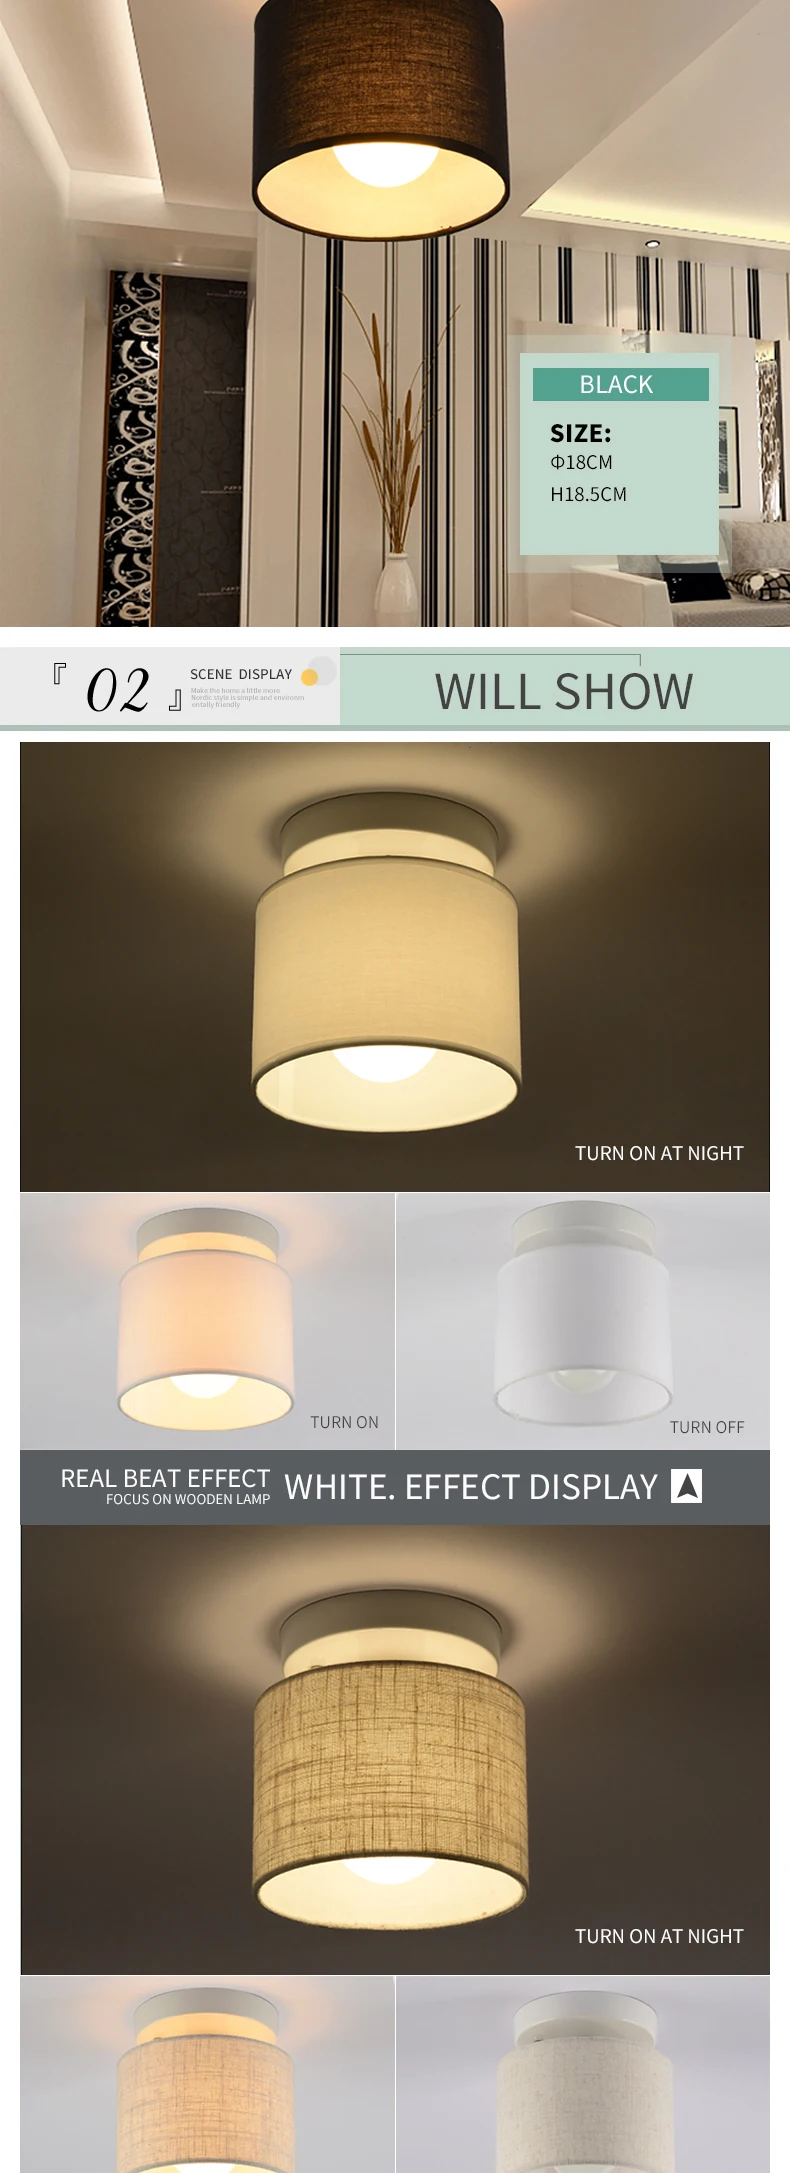 AIBIOU простой светодиодный потолочный светильник современный круглый потолочный светильник для коридора, кухни, светящаяся рамка для ткани, спальни, осветительные приборы